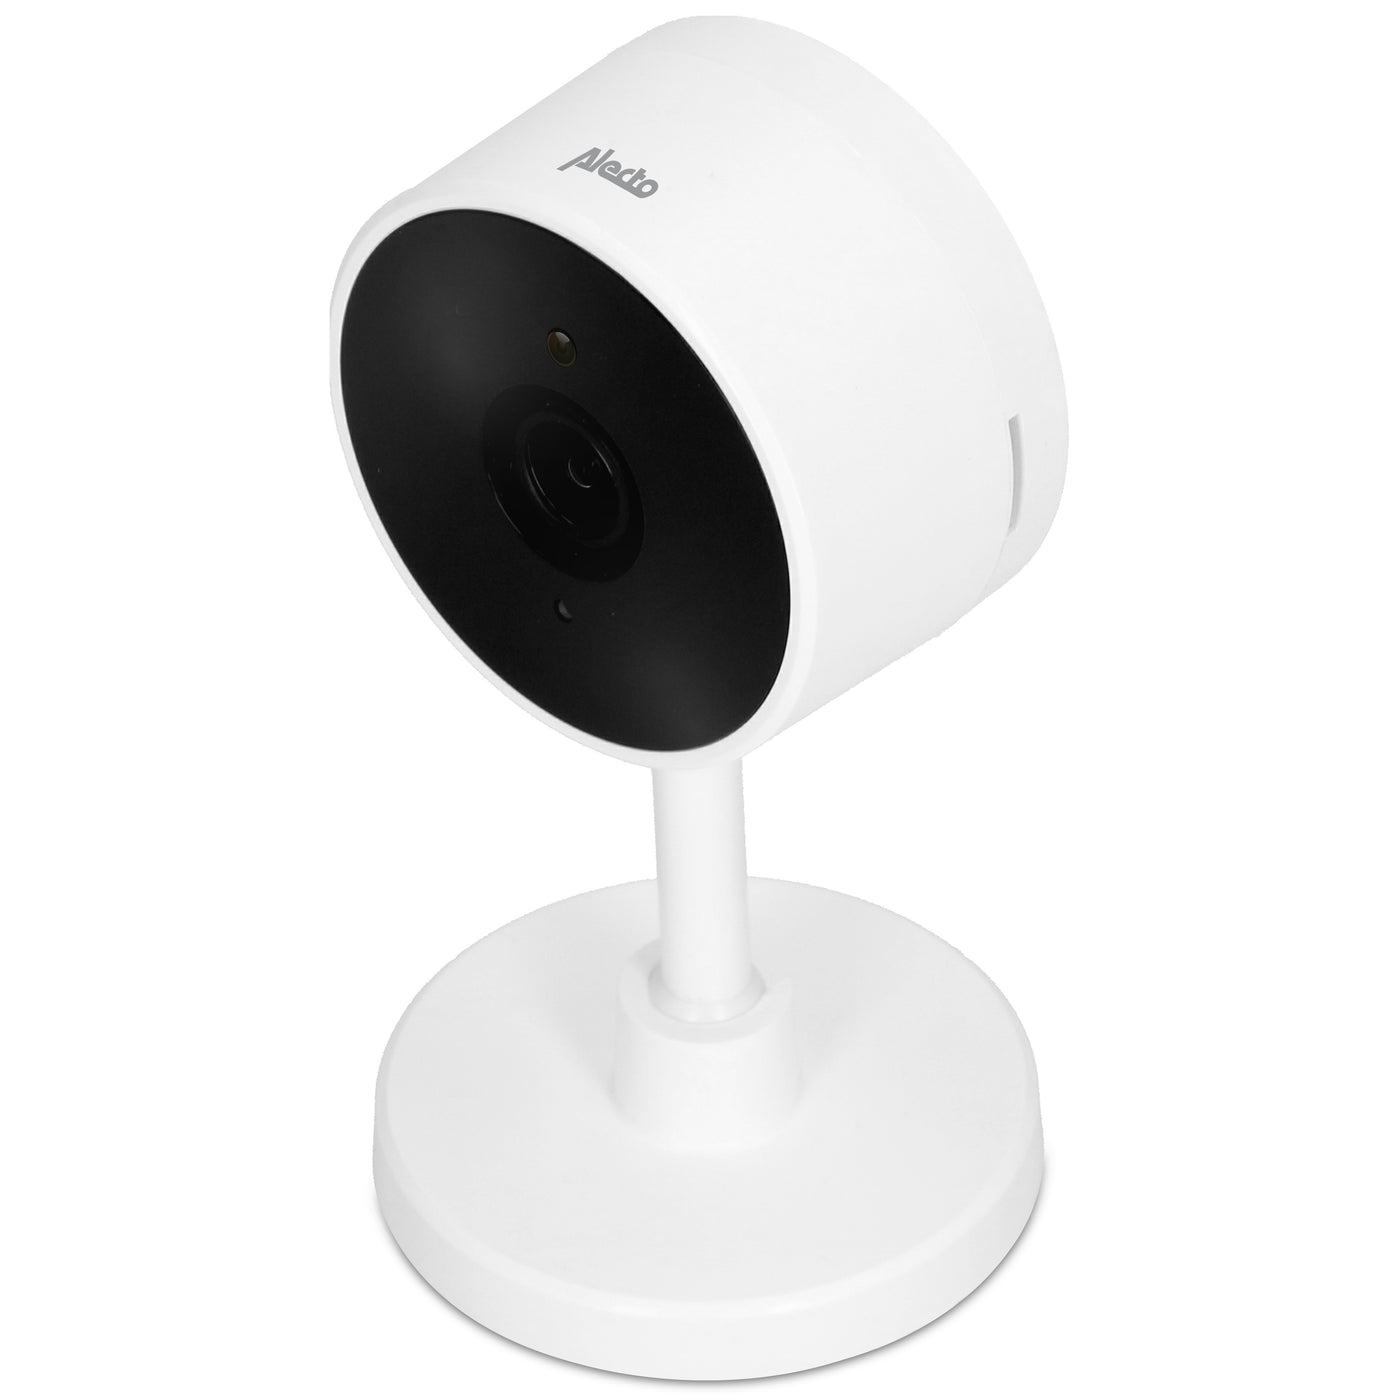 Alecto SMART-CAM10 - Smart wifi camera, aan domotica koppelbare IP camera